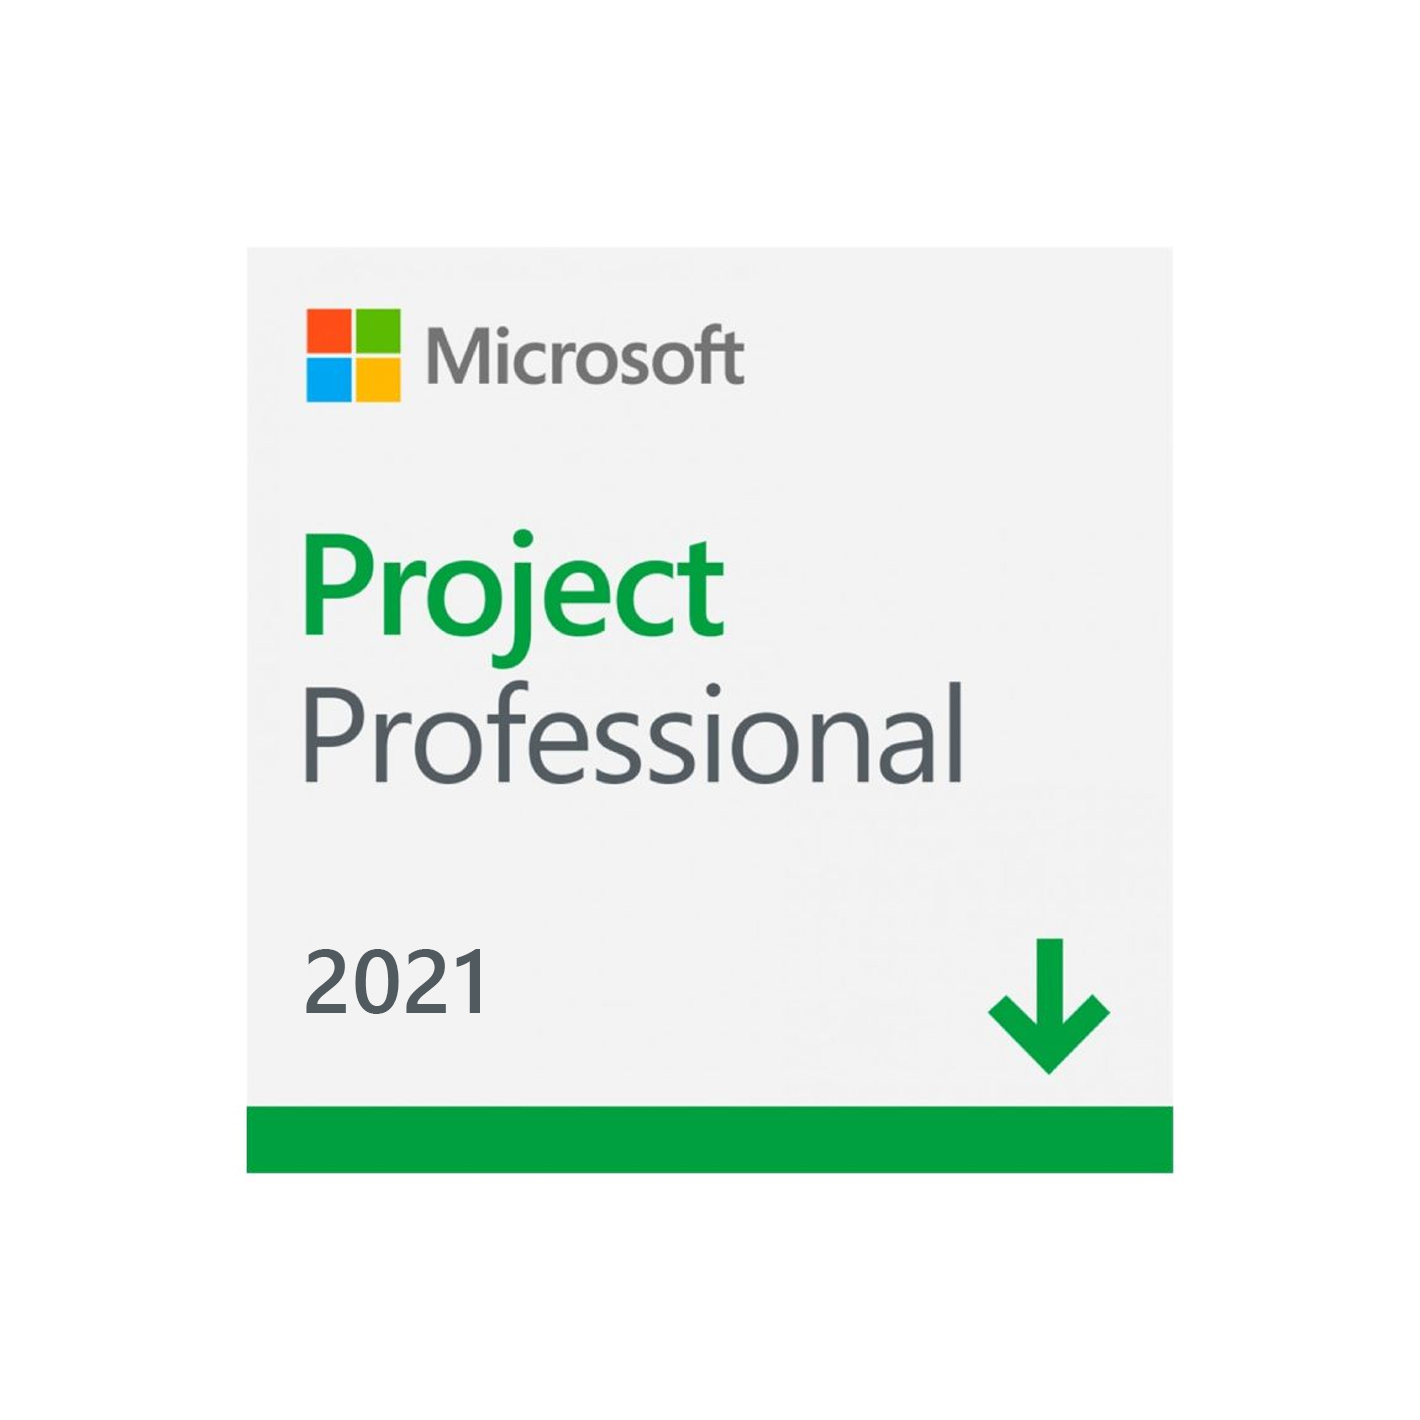 Comprar licencia de Microsoft Project 2021